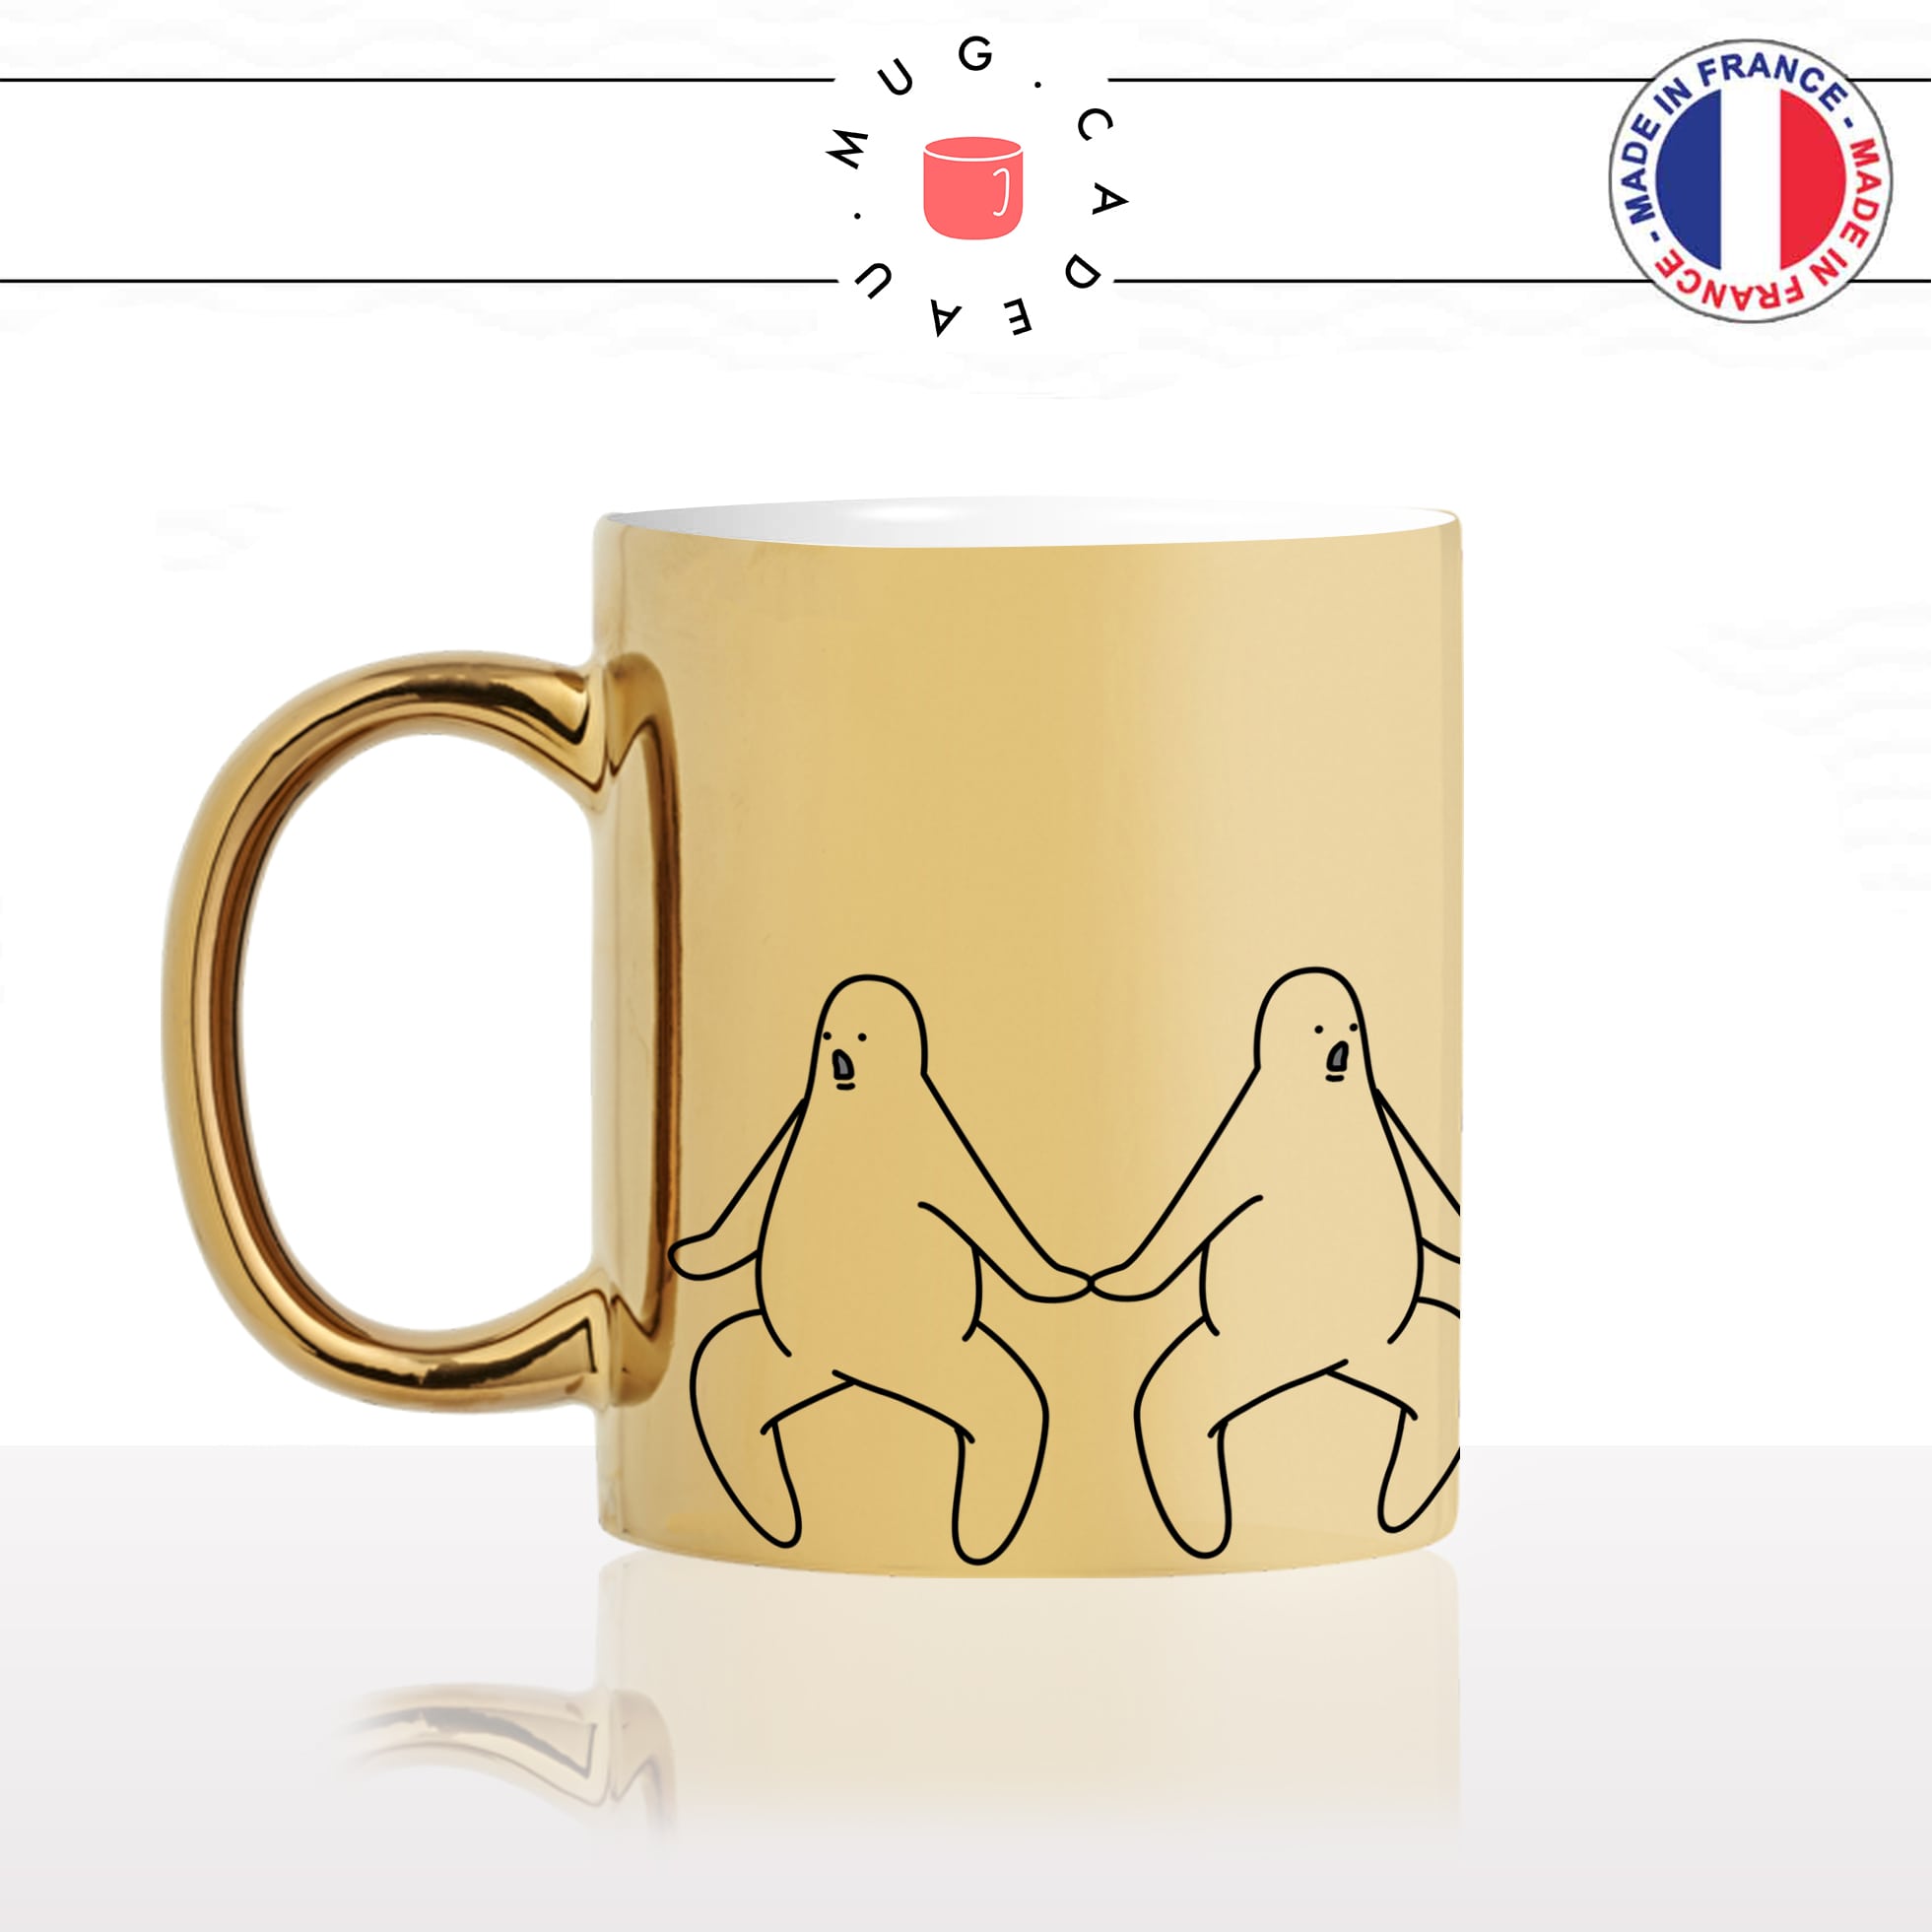 mug-tasse-doré-or-gold-bonhomme-omg-oh-my-god-amazing-dingue-fou-dessin-cool-humour-fun-idée-cadeau-personnalisé-café-thé-min